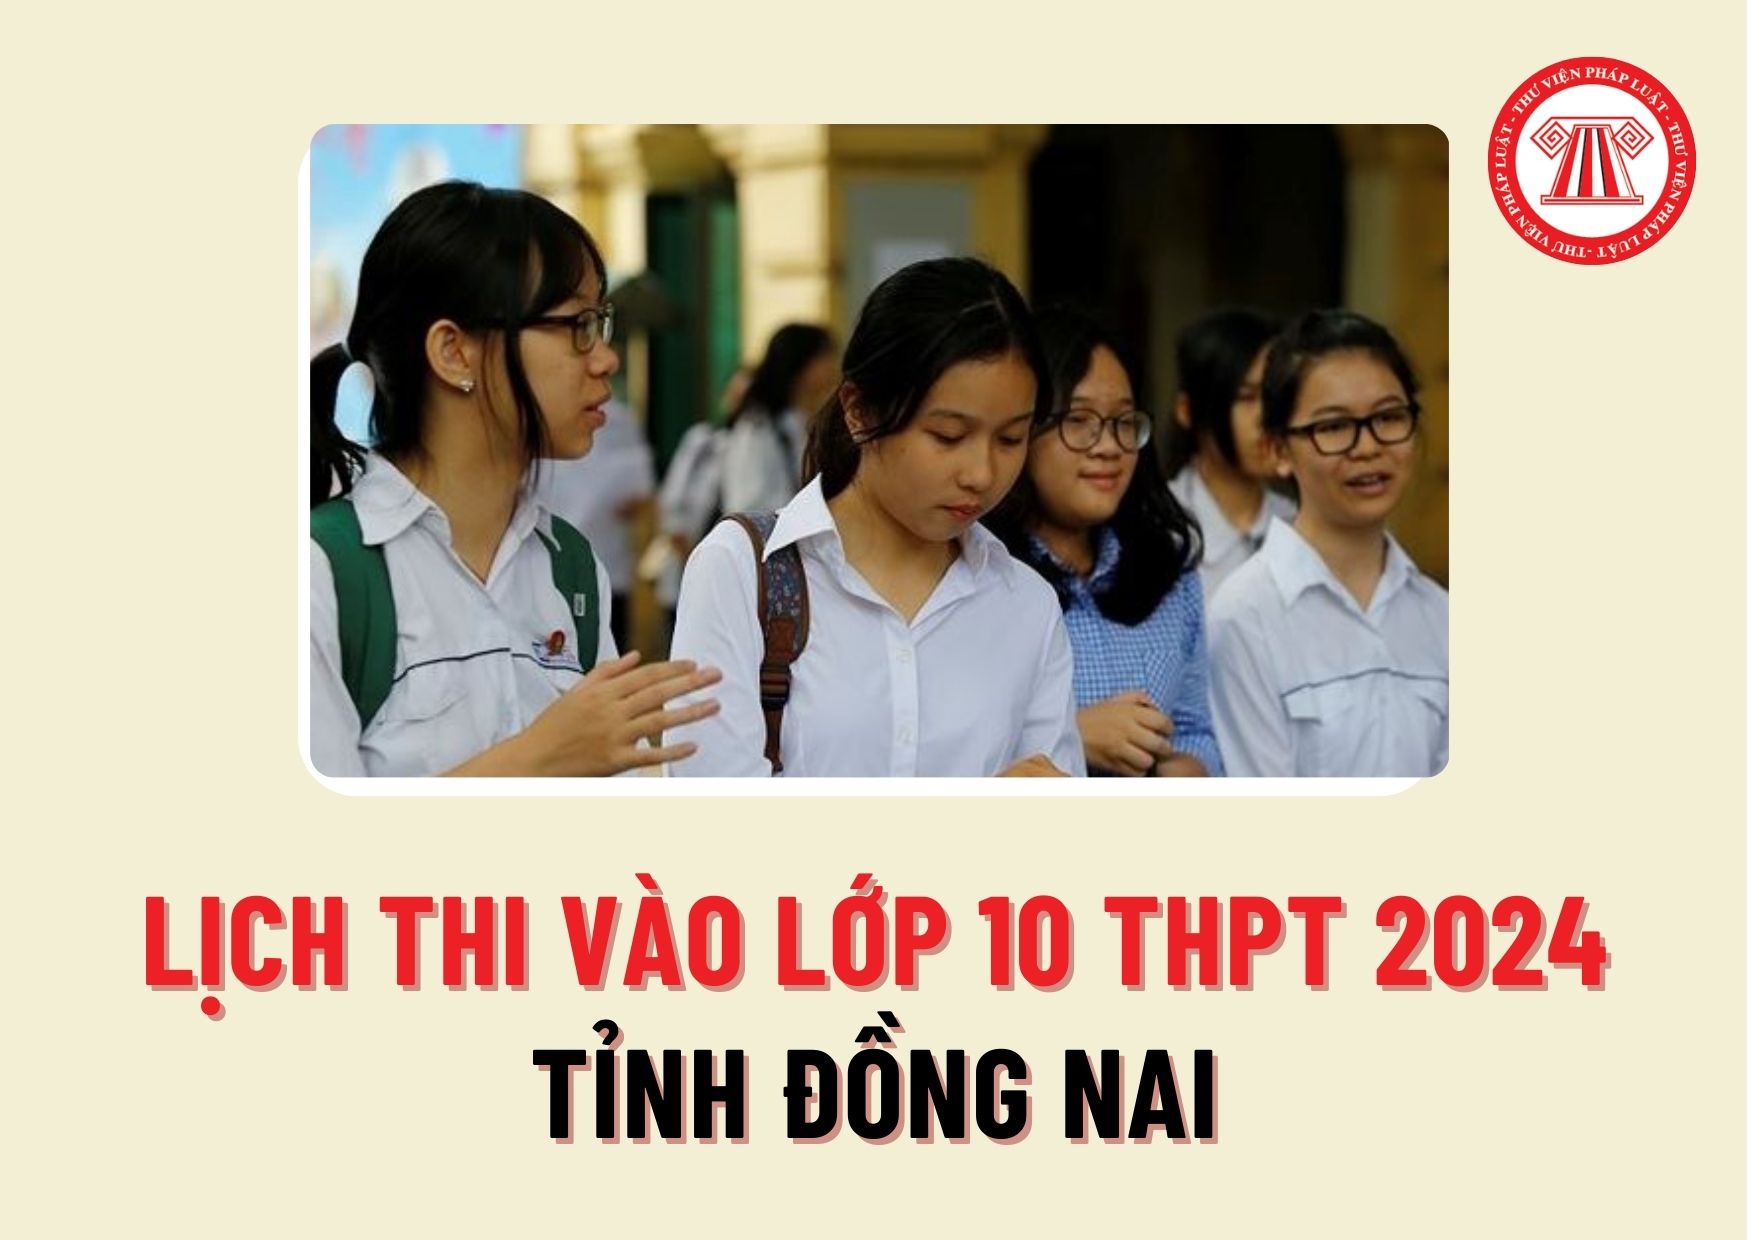 Lịch thi vào lớp 10 THPT 2024 tỉnh Đồng Nai vào ngày nào? Thí sinh Đồng Nai thi vào lớp 10 cần thi những môn thi gì?